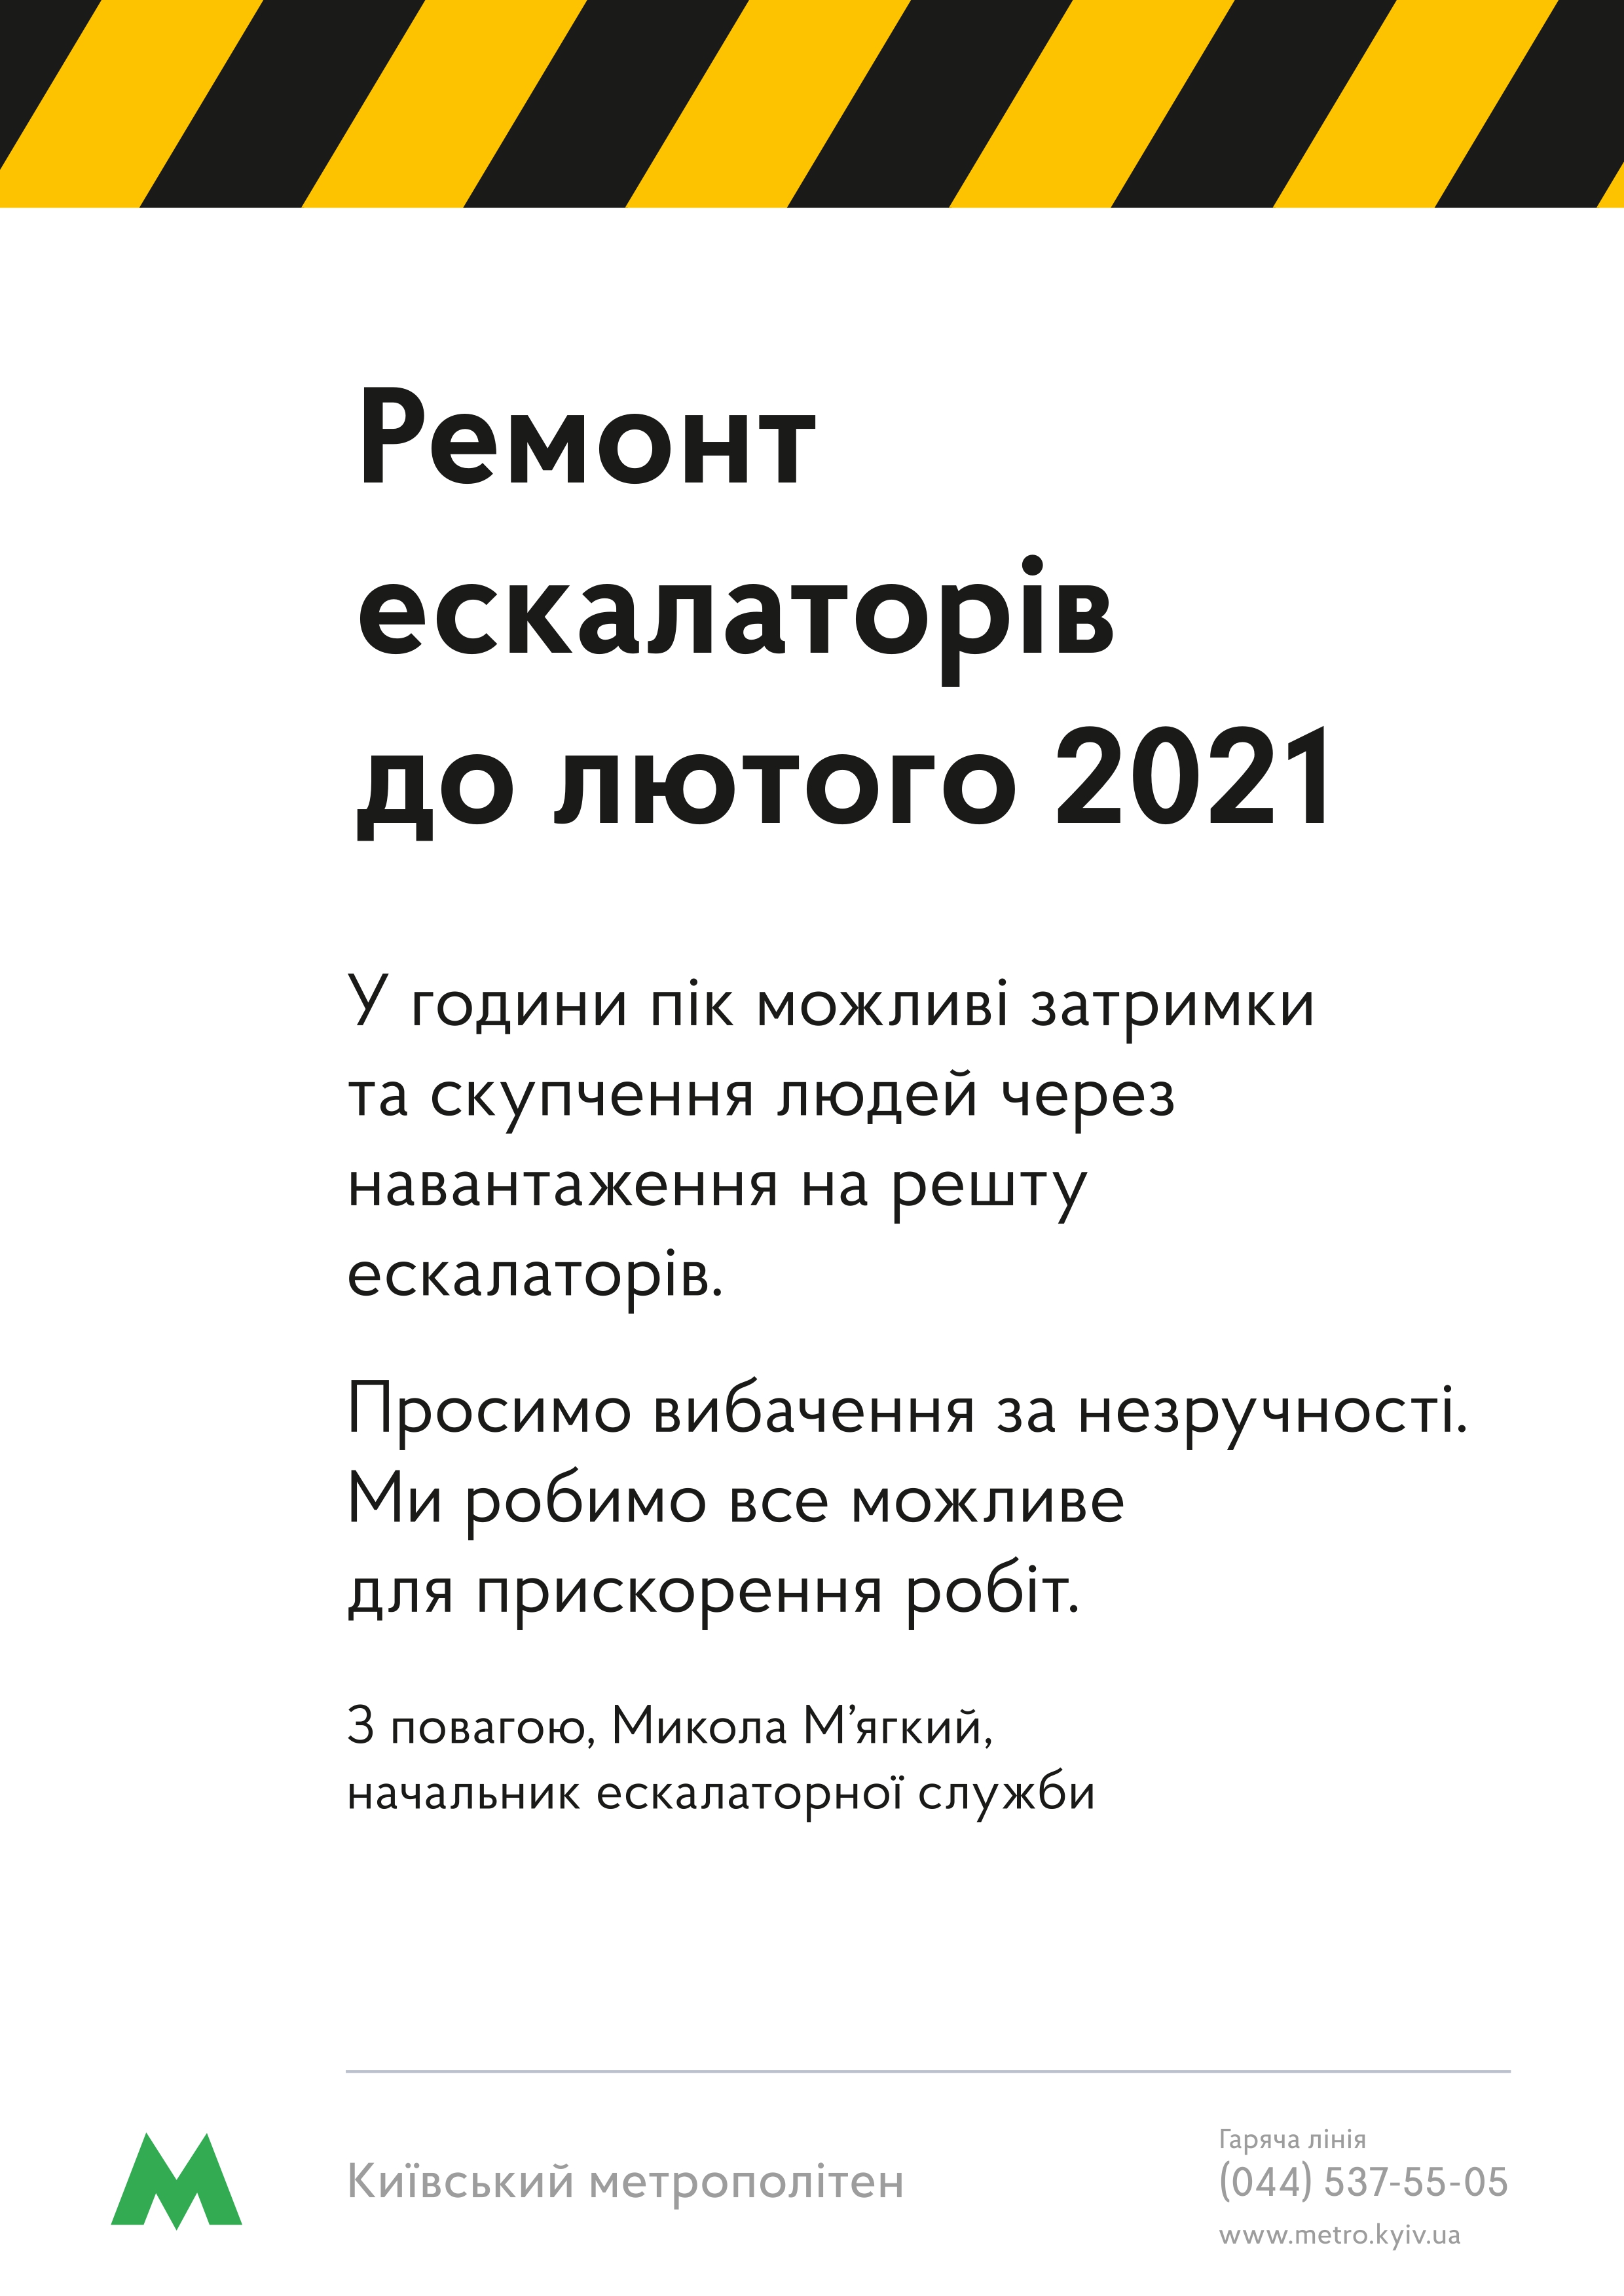  ескалаторів до лютого 2021 Майдан_page-0001.jpg